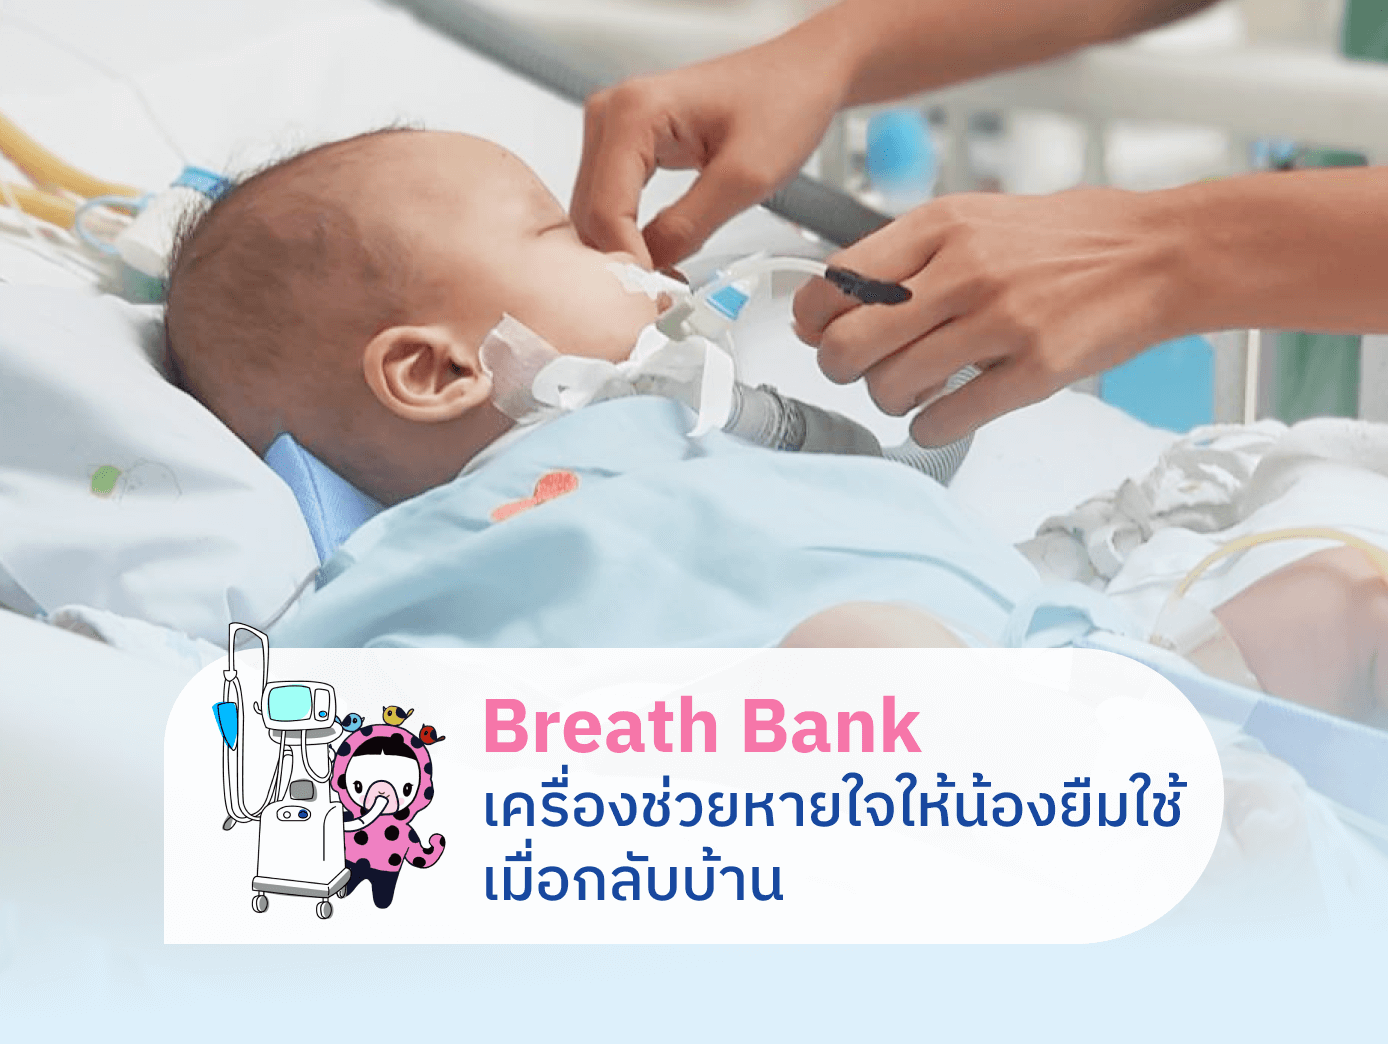 ร่วมสมทบทุนซื้อเครื่องช่วยหายใจเพื่อผู้ป่วยเด็กที่จำเป็นต้องใช้เครื่องช่วยหายใจที่บ้าน และผู้ป่วยเด็กที่เจ็บป่วยหนักในระยะวิกฤติ